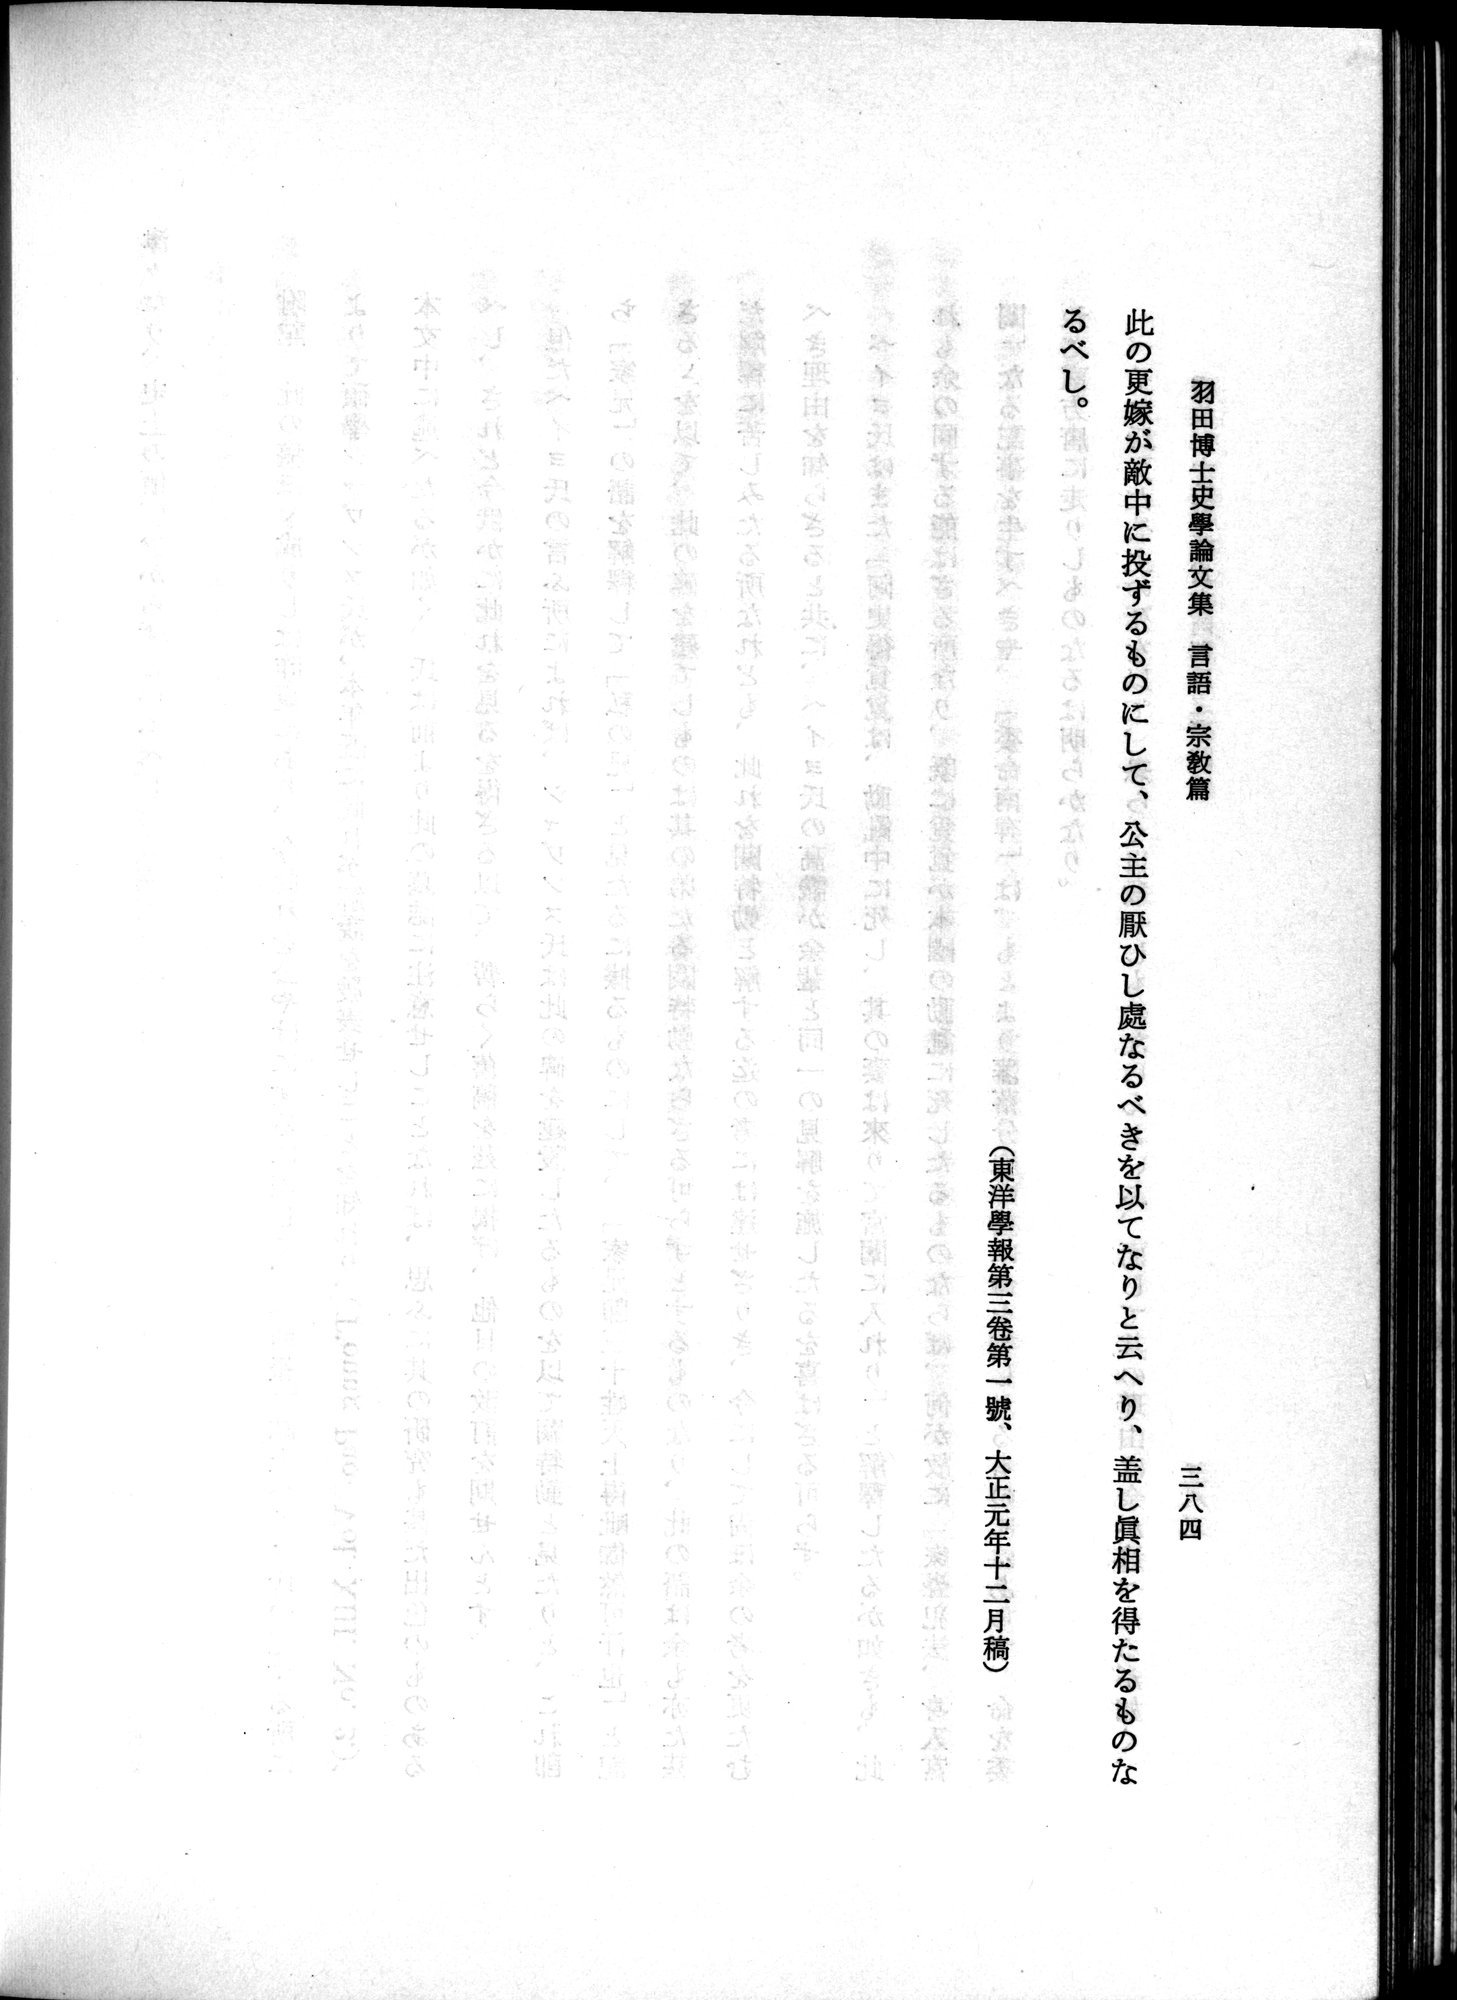 羽田博士史学論文集 : vol.2 / Page 446 (Grayscale High Resolution Image)